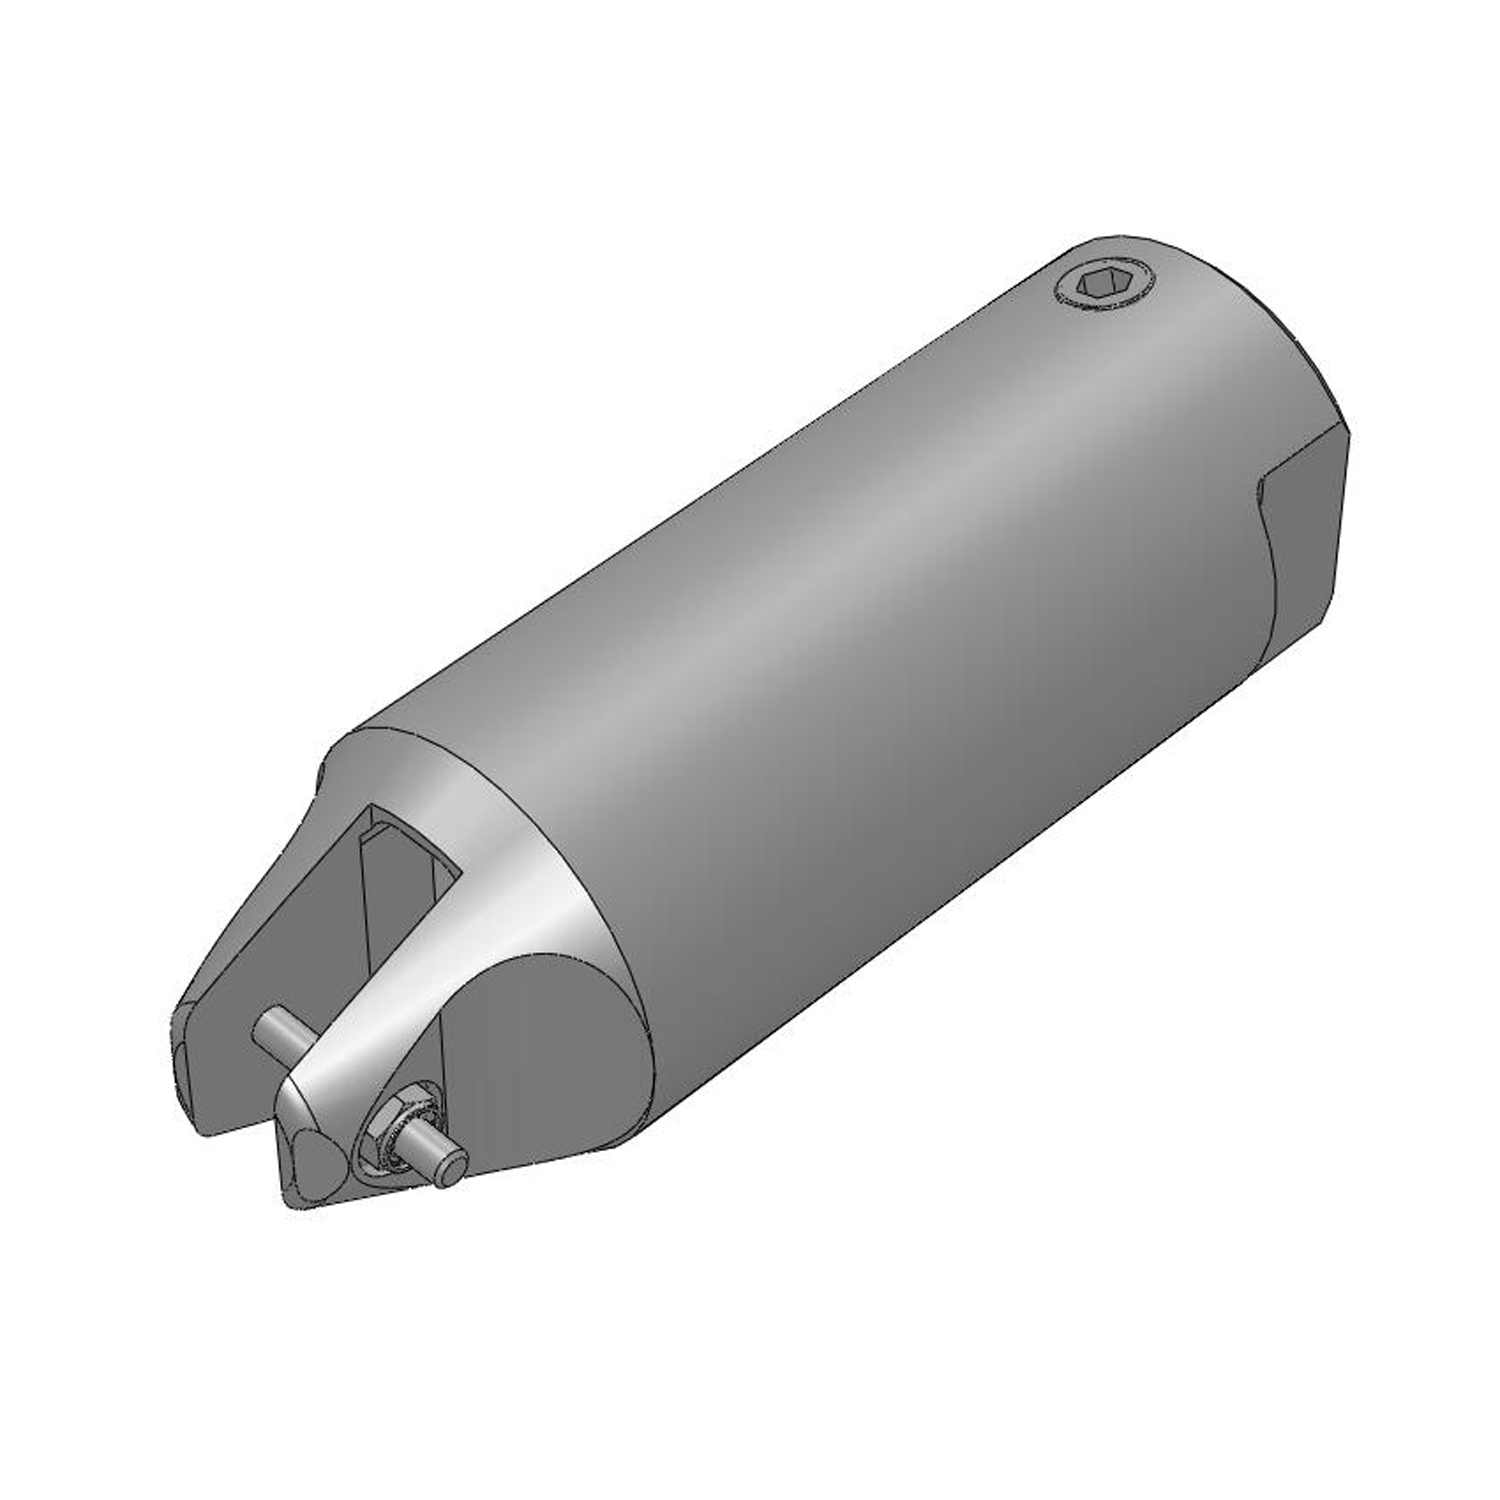 ベッセル(VESSEL) エアーニッパー用 ブレード/GT-N30型適応 樹脂用フラット刃 N30PF